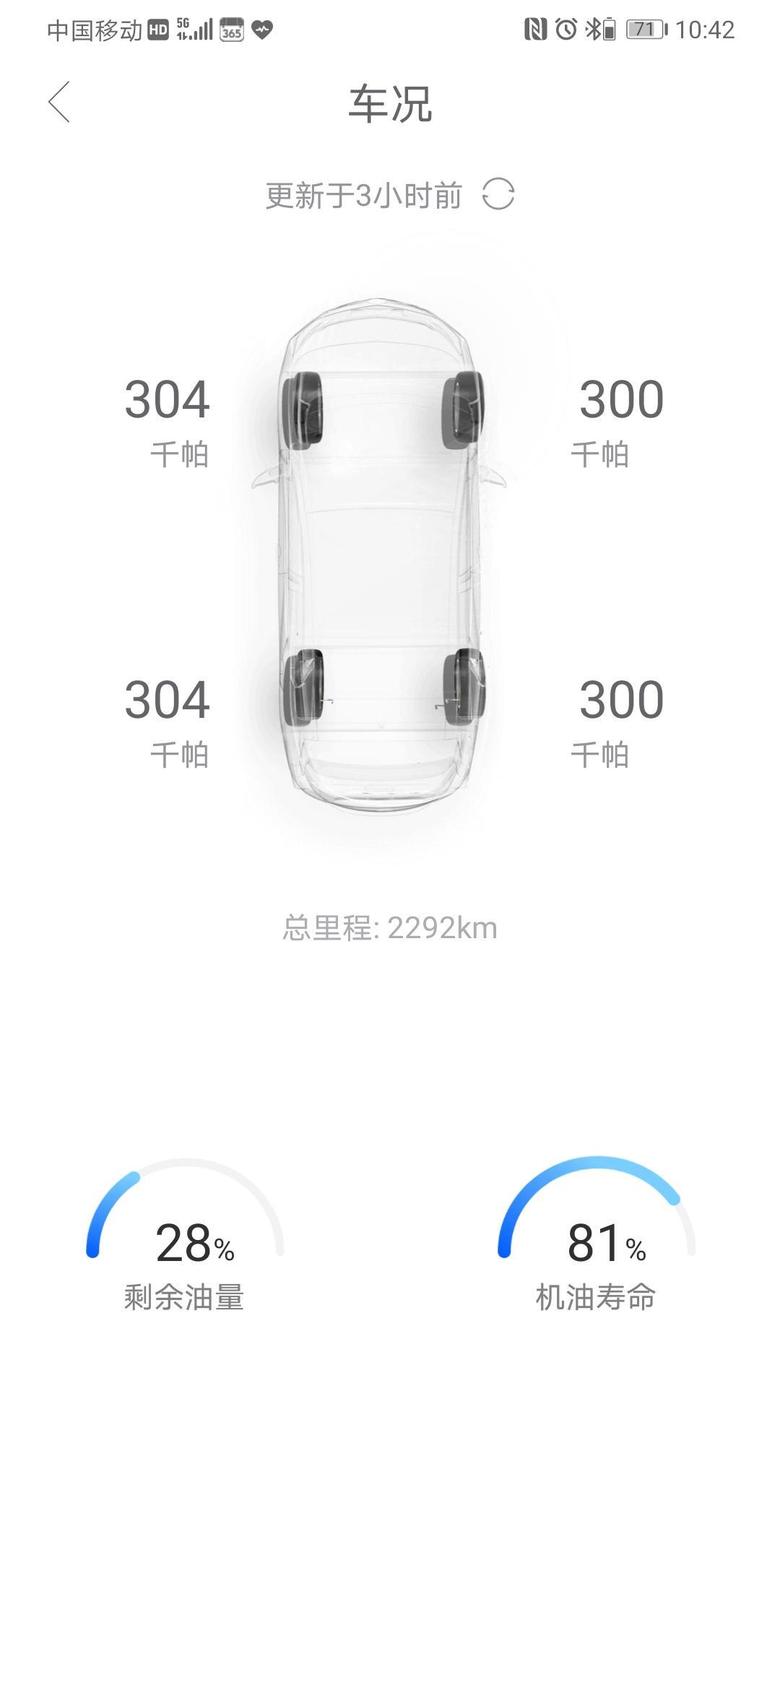 昂科旗 准备下周开车去重庆，预计来回2500-3000公里。目前车跑了2300公里，首保是在去重庆前进行，还是回来之后合适一些？大家都是在多少公里首保的？